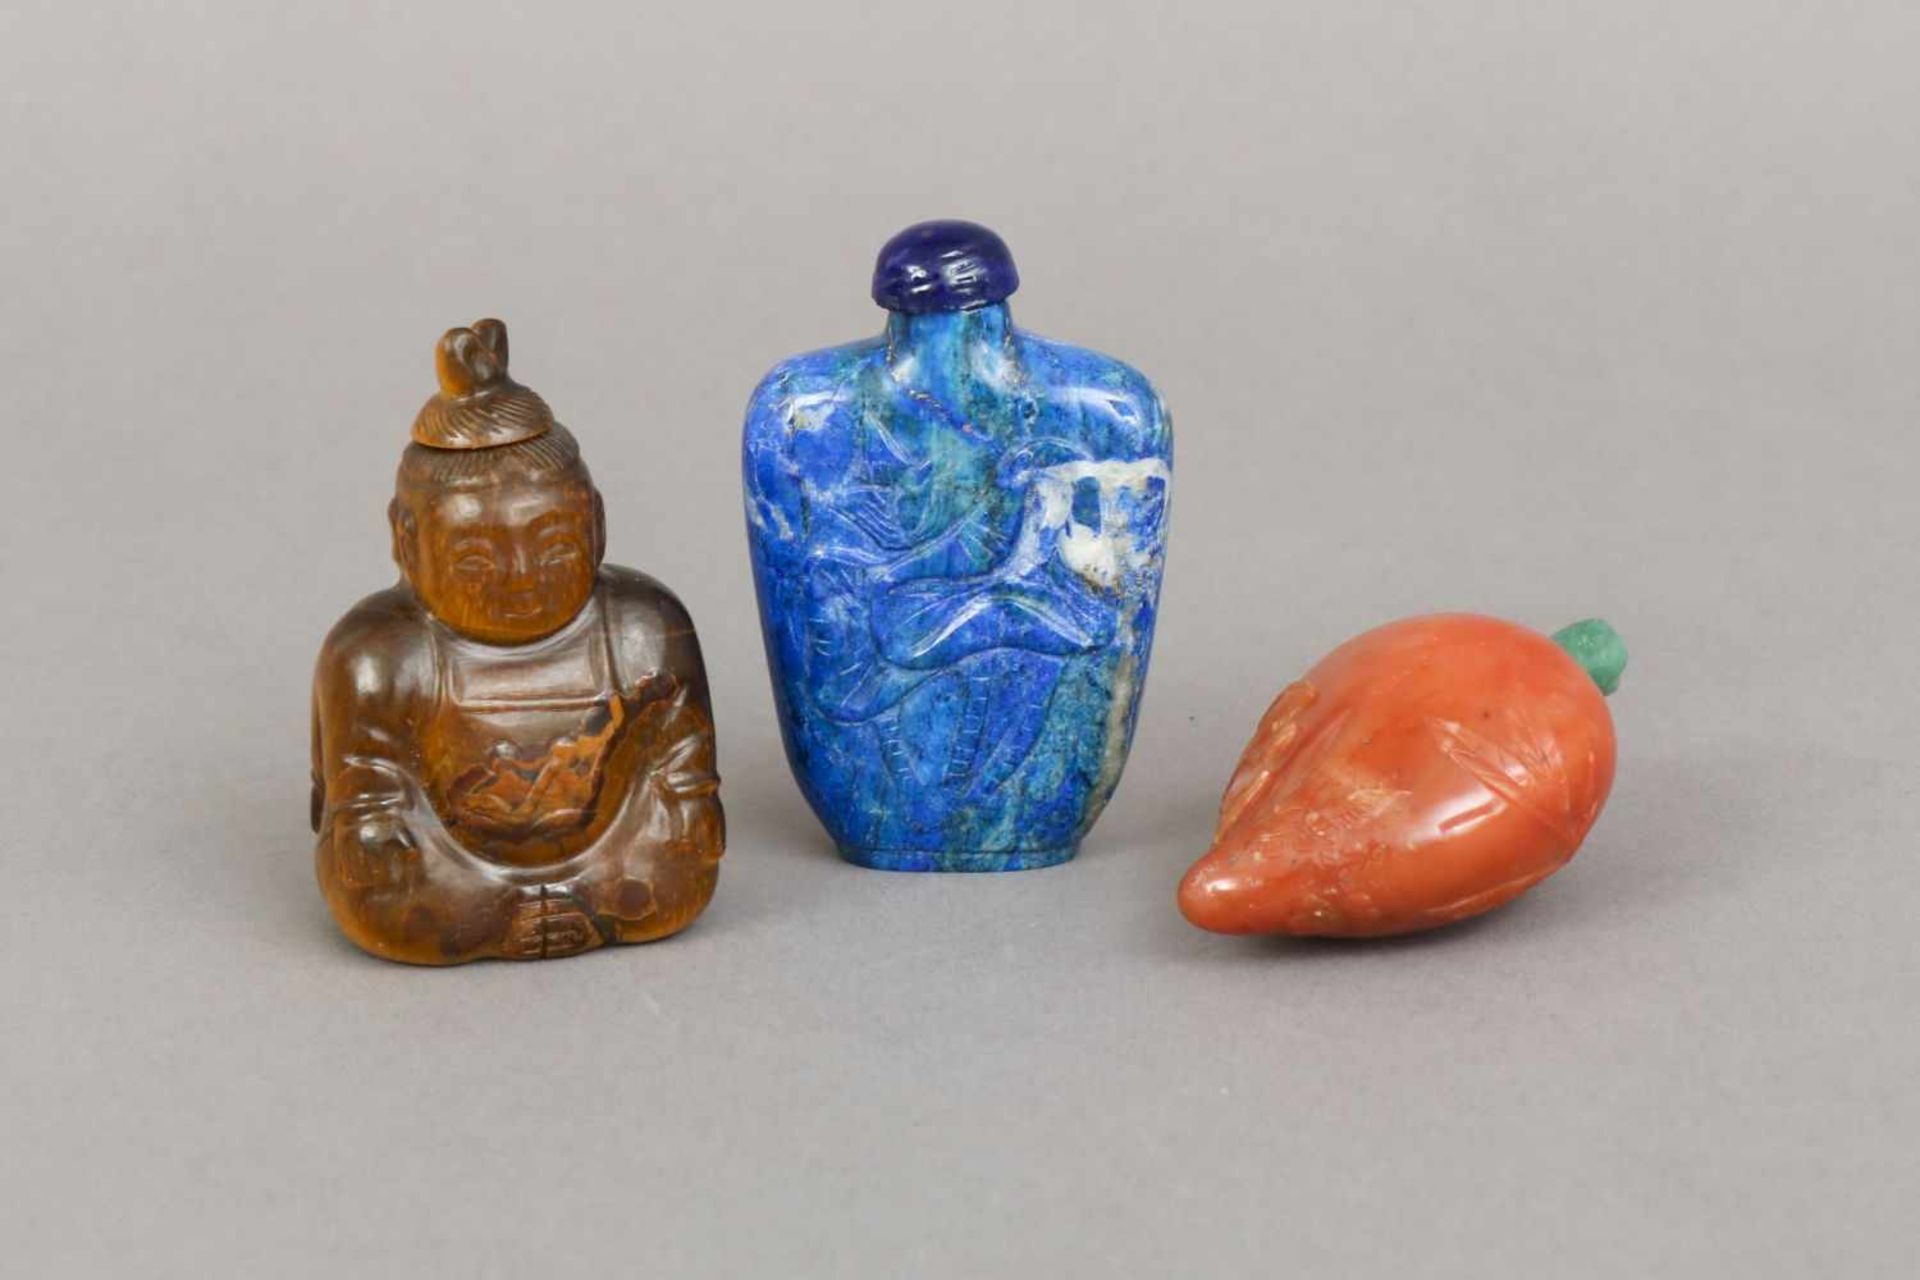 3 chinesische Snuff-bottles, Stein, geschnitzt1x Tigerauge in Form eines Buddhas (beidseitig), 1 x - Image 2 of 3